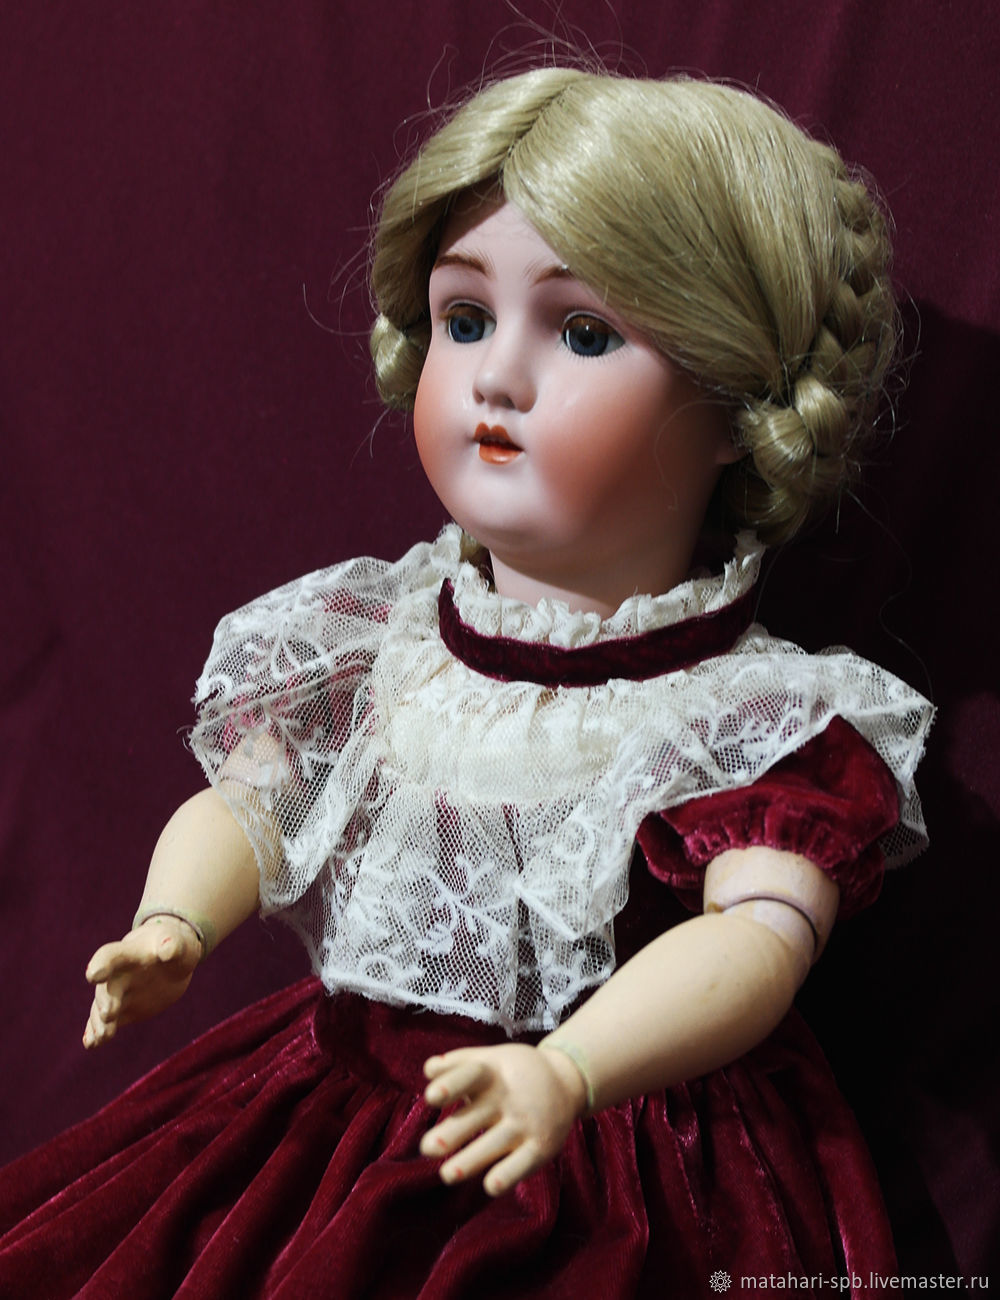 Купить Винтаж: Антикварная немецкая кукла 1900 года в интернет-магазине на ...